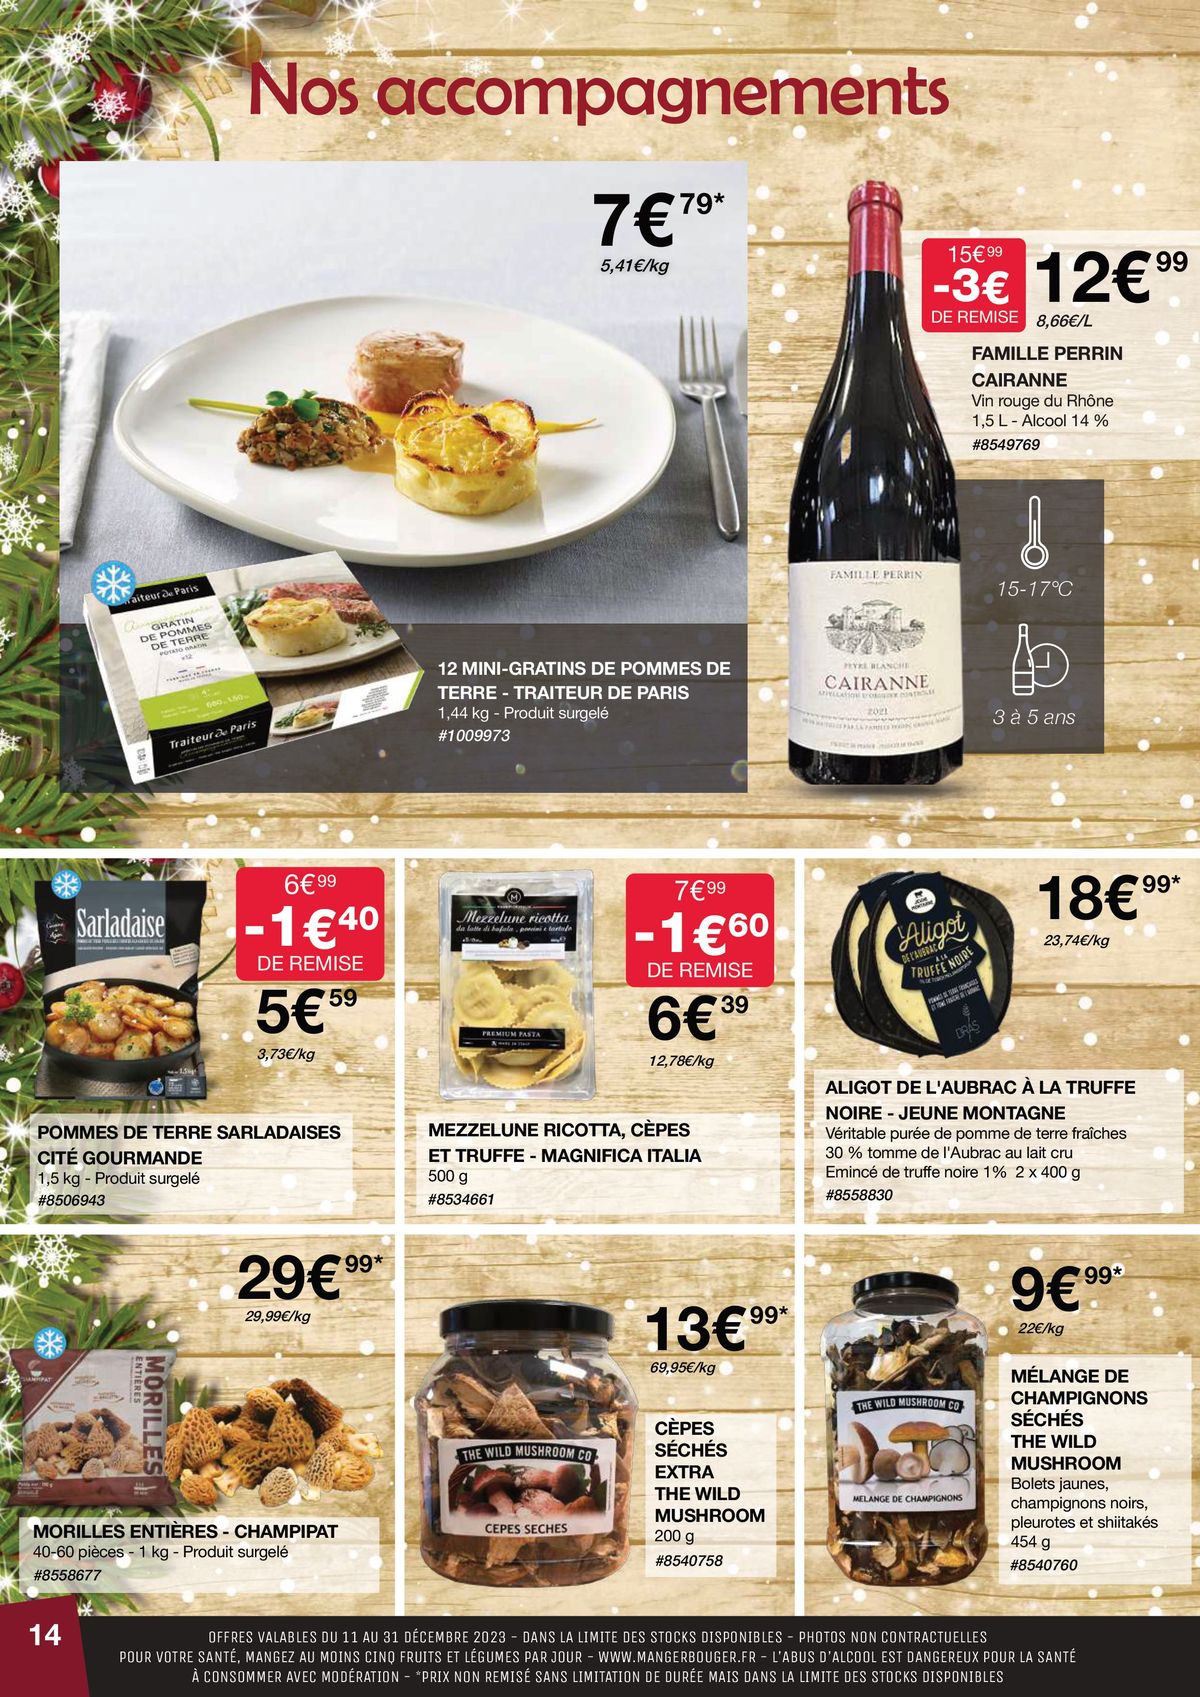 Catalogue Sélection noel, repas de fête, page 00014